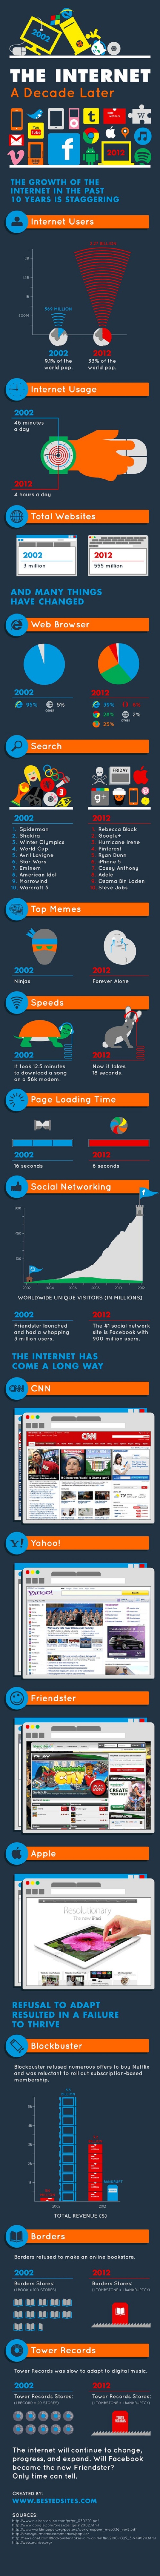 Internet en 2002 vs Internet en 2012